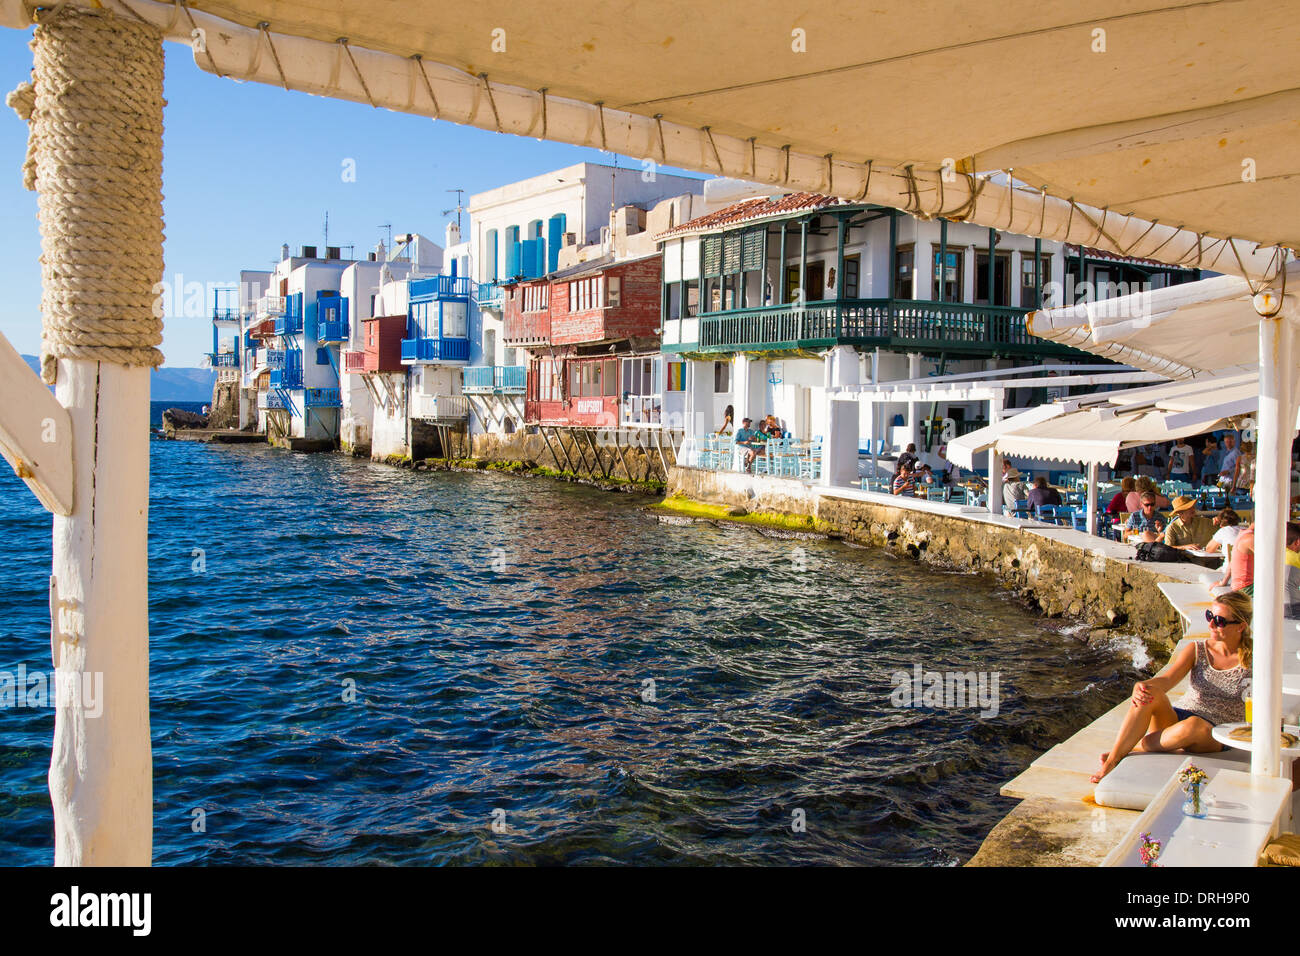 La petite Venise de Mykonos, Cyclades Grèce Banque D'Images